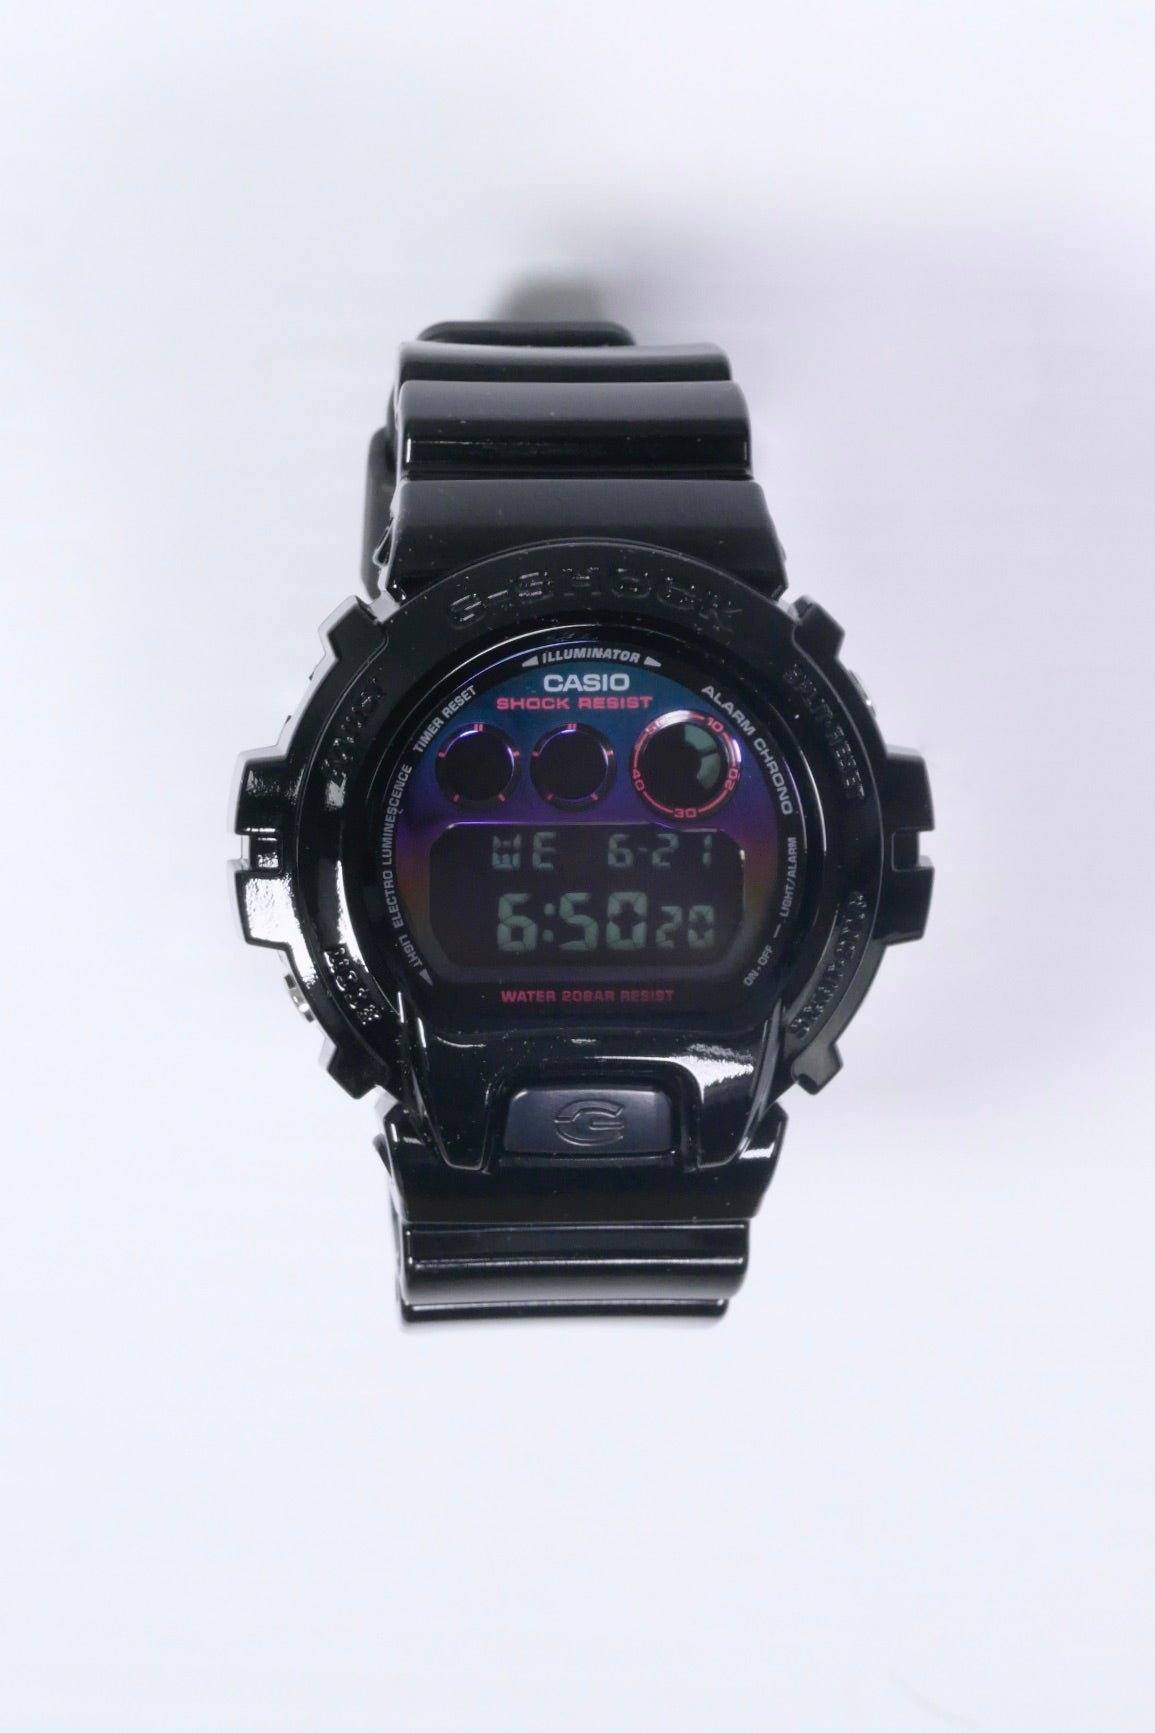 G-Shock DW-6900RGB-1 Watch - Black